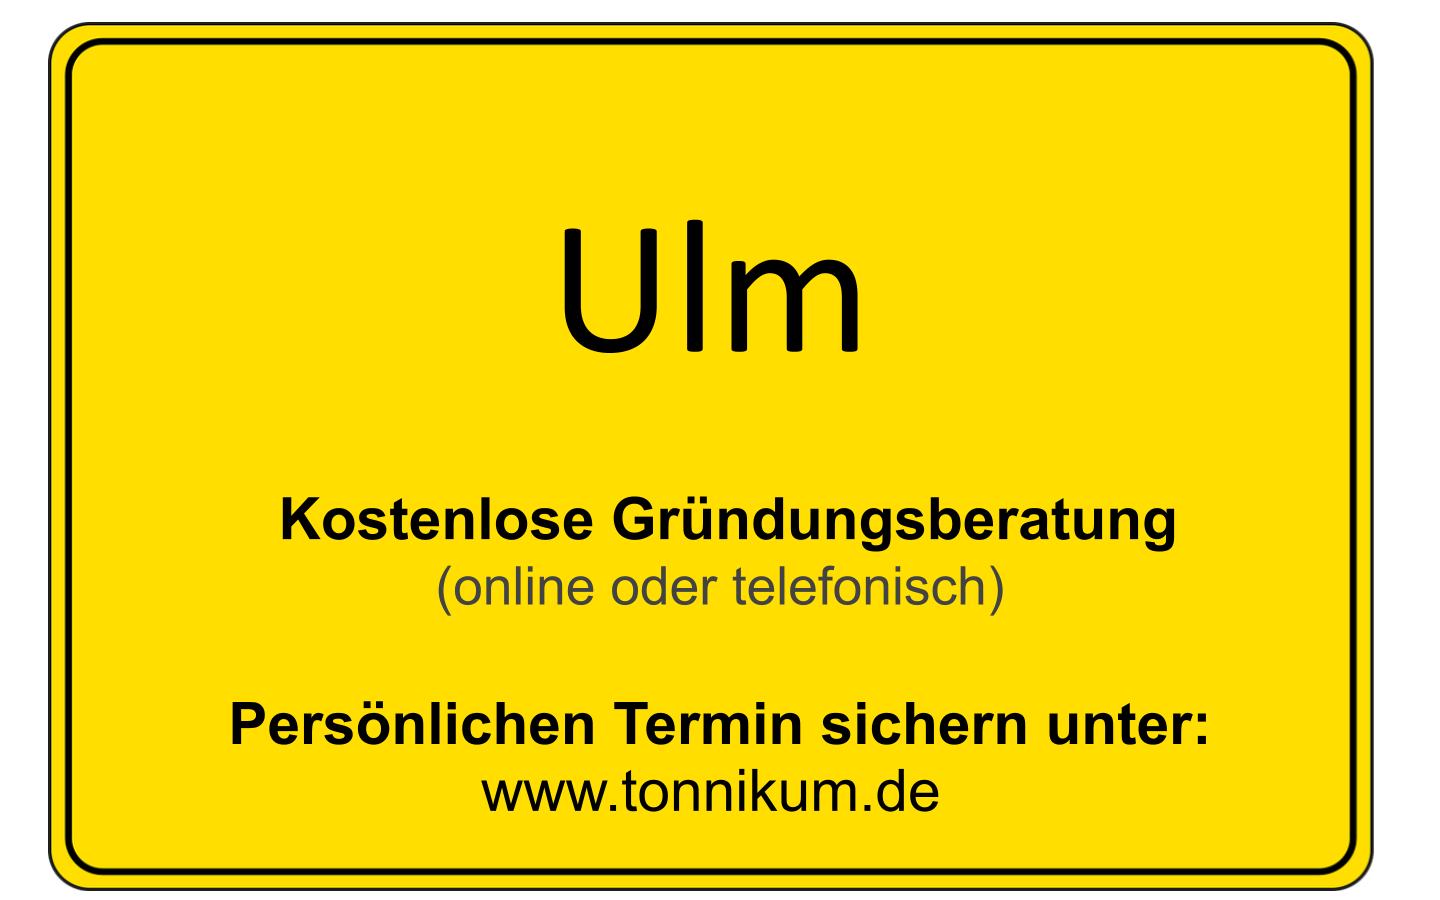 Ulm Beratung Existenzgründung  ⇒ kostenloses Erstgespräch